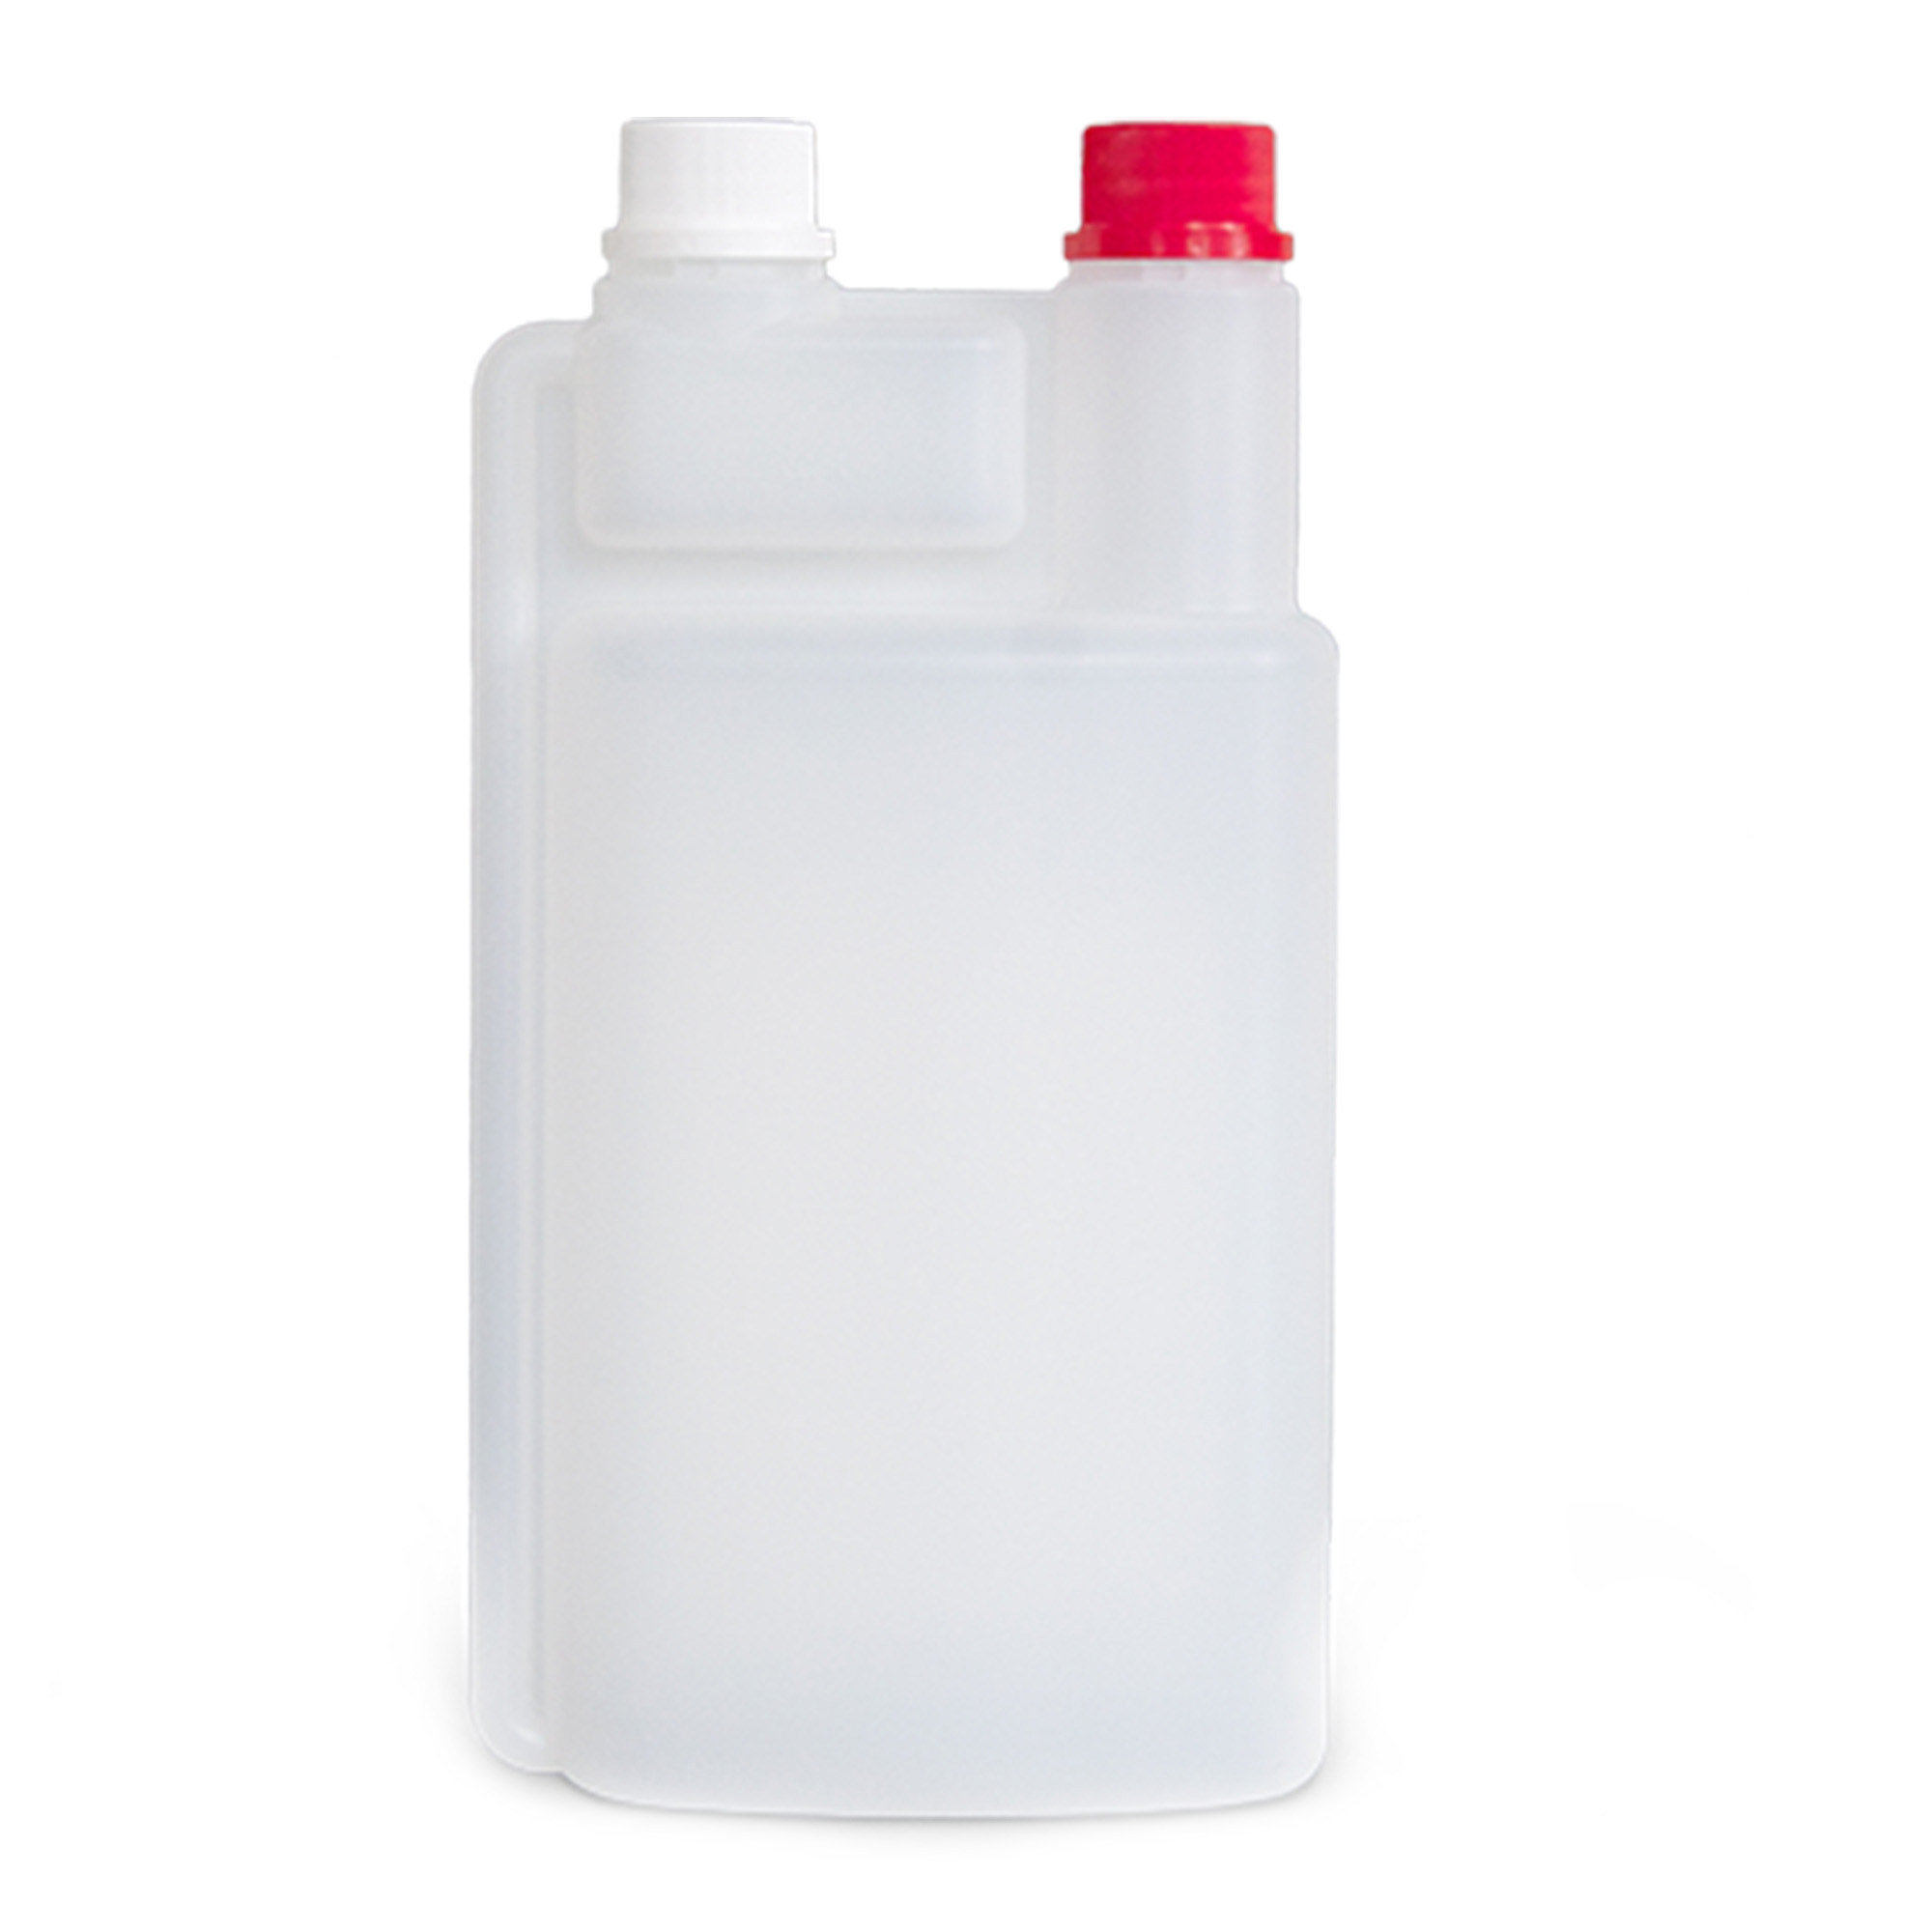 Dr. Schumacher Dosierflasche 1 Liter 60 ml Kammer 00-904-010_1